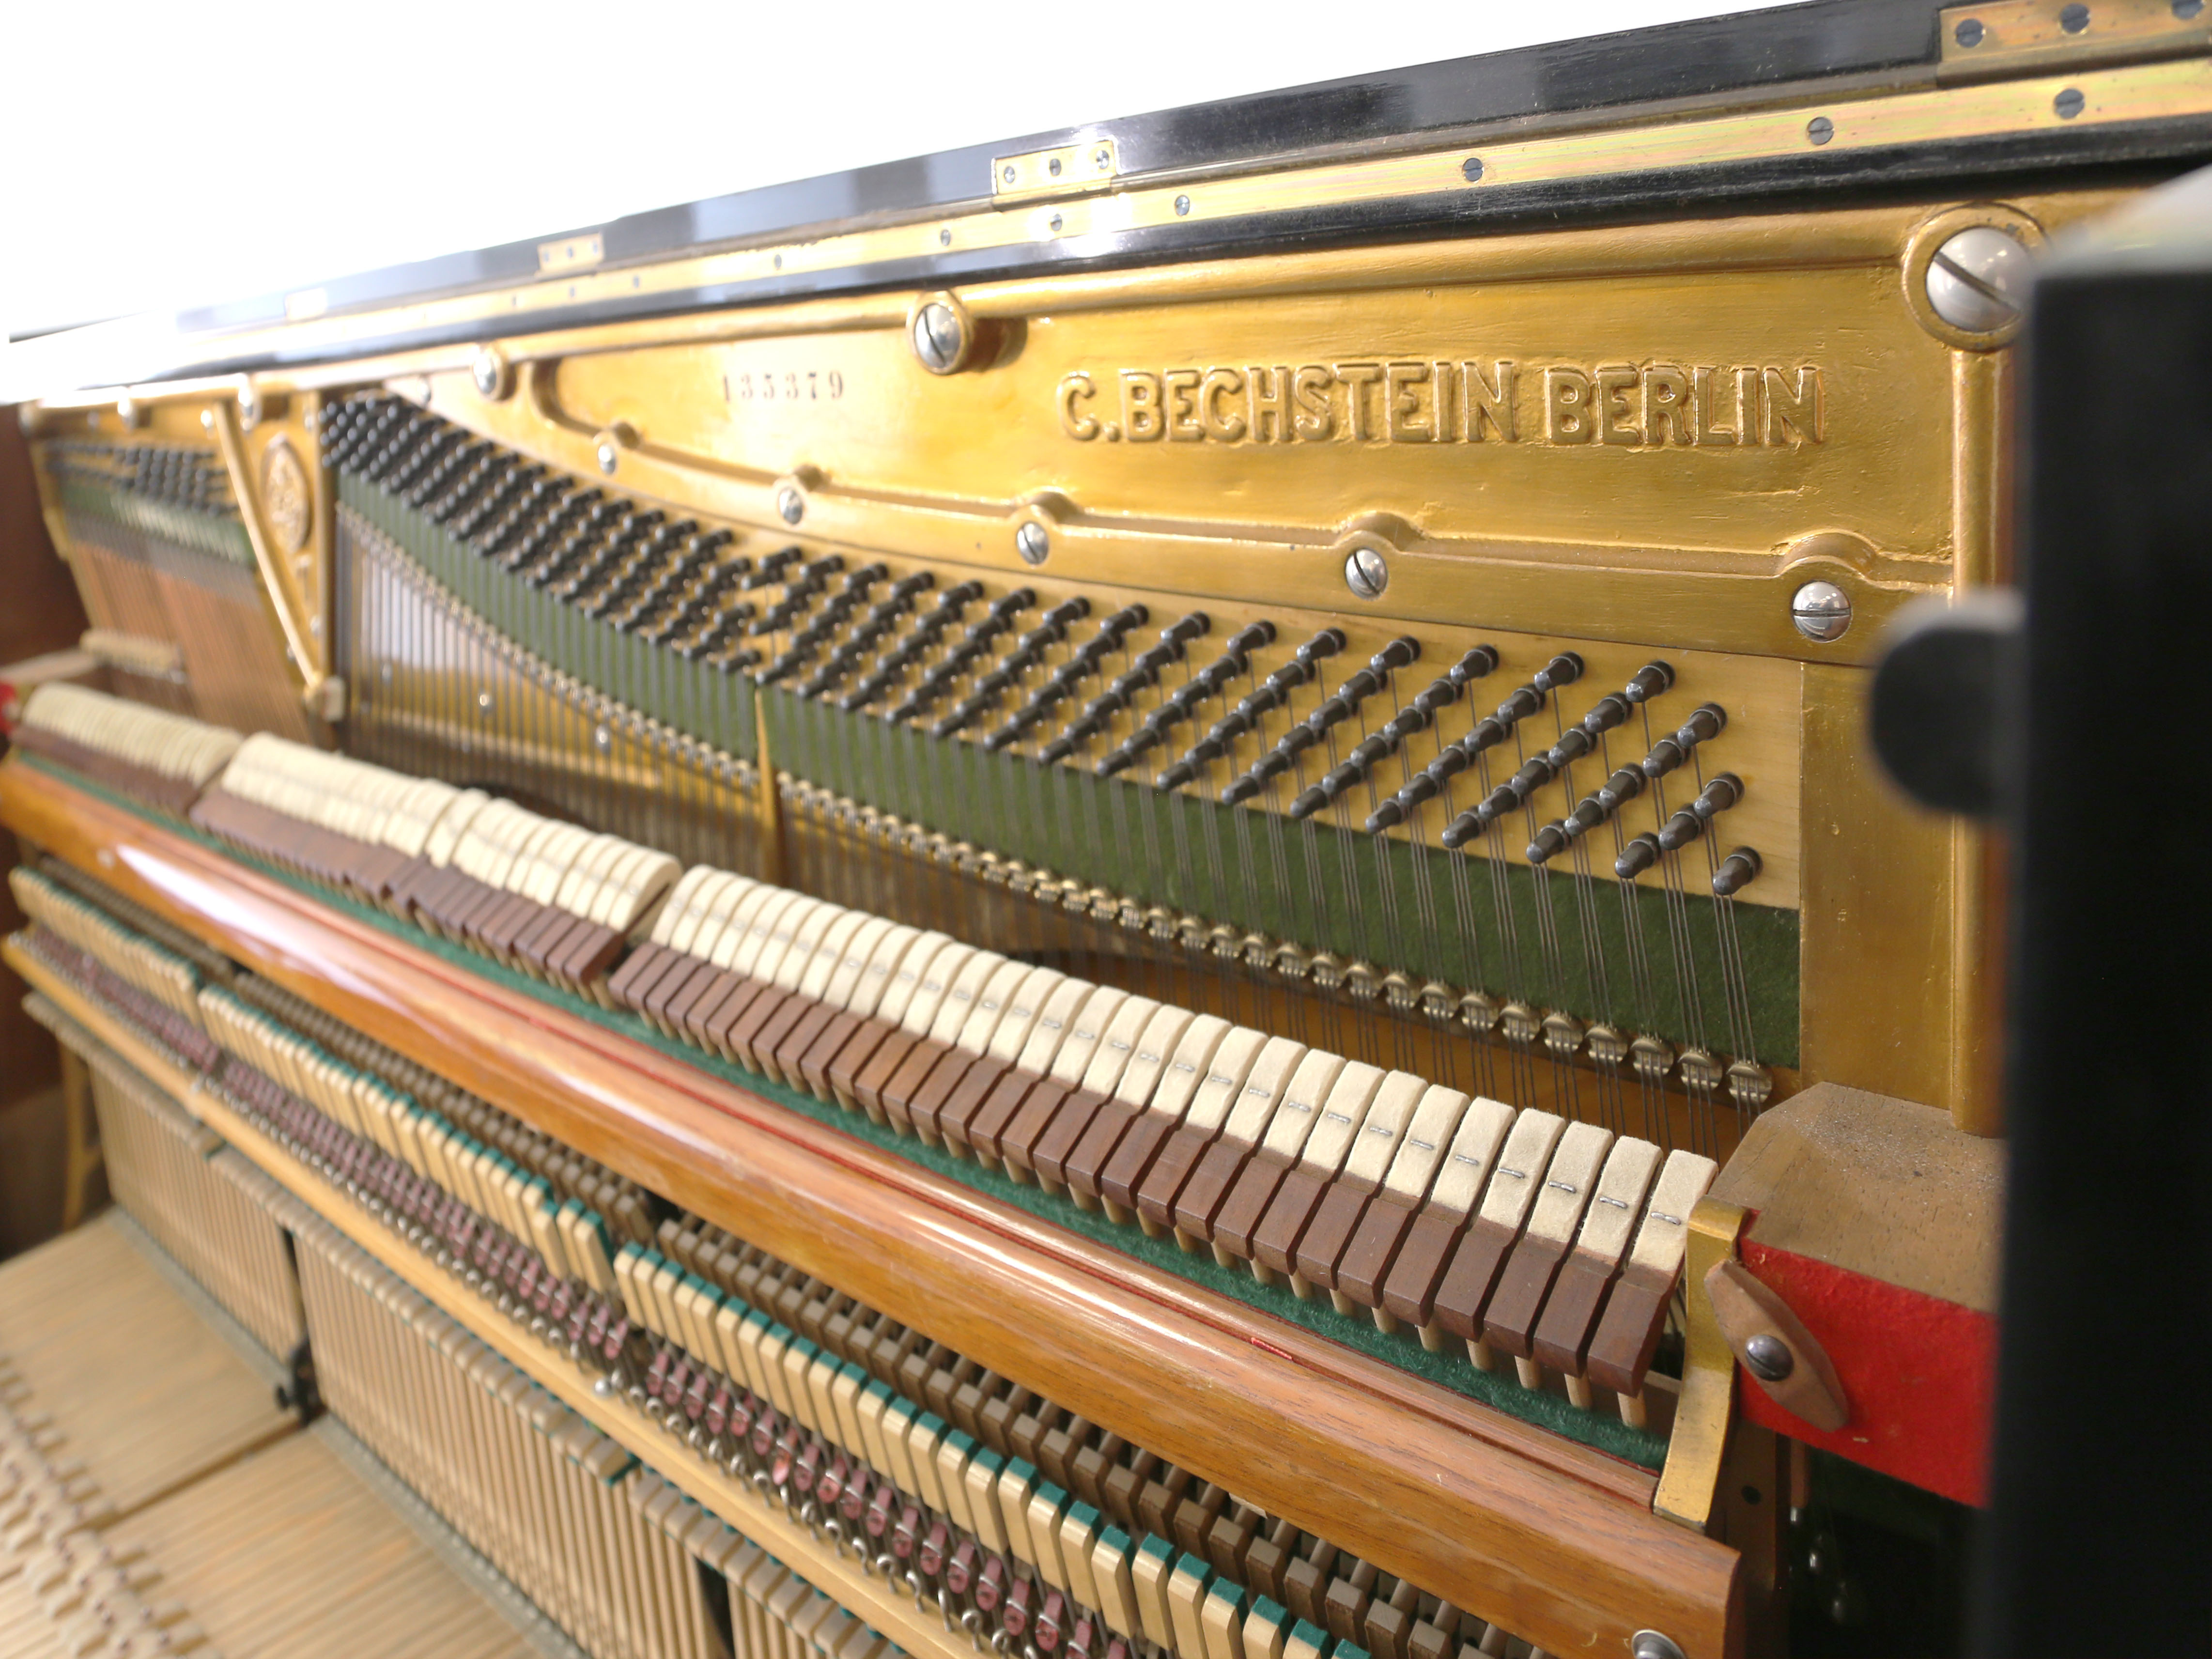 C. Bechstein gebr. Ser.135379 ex pianola